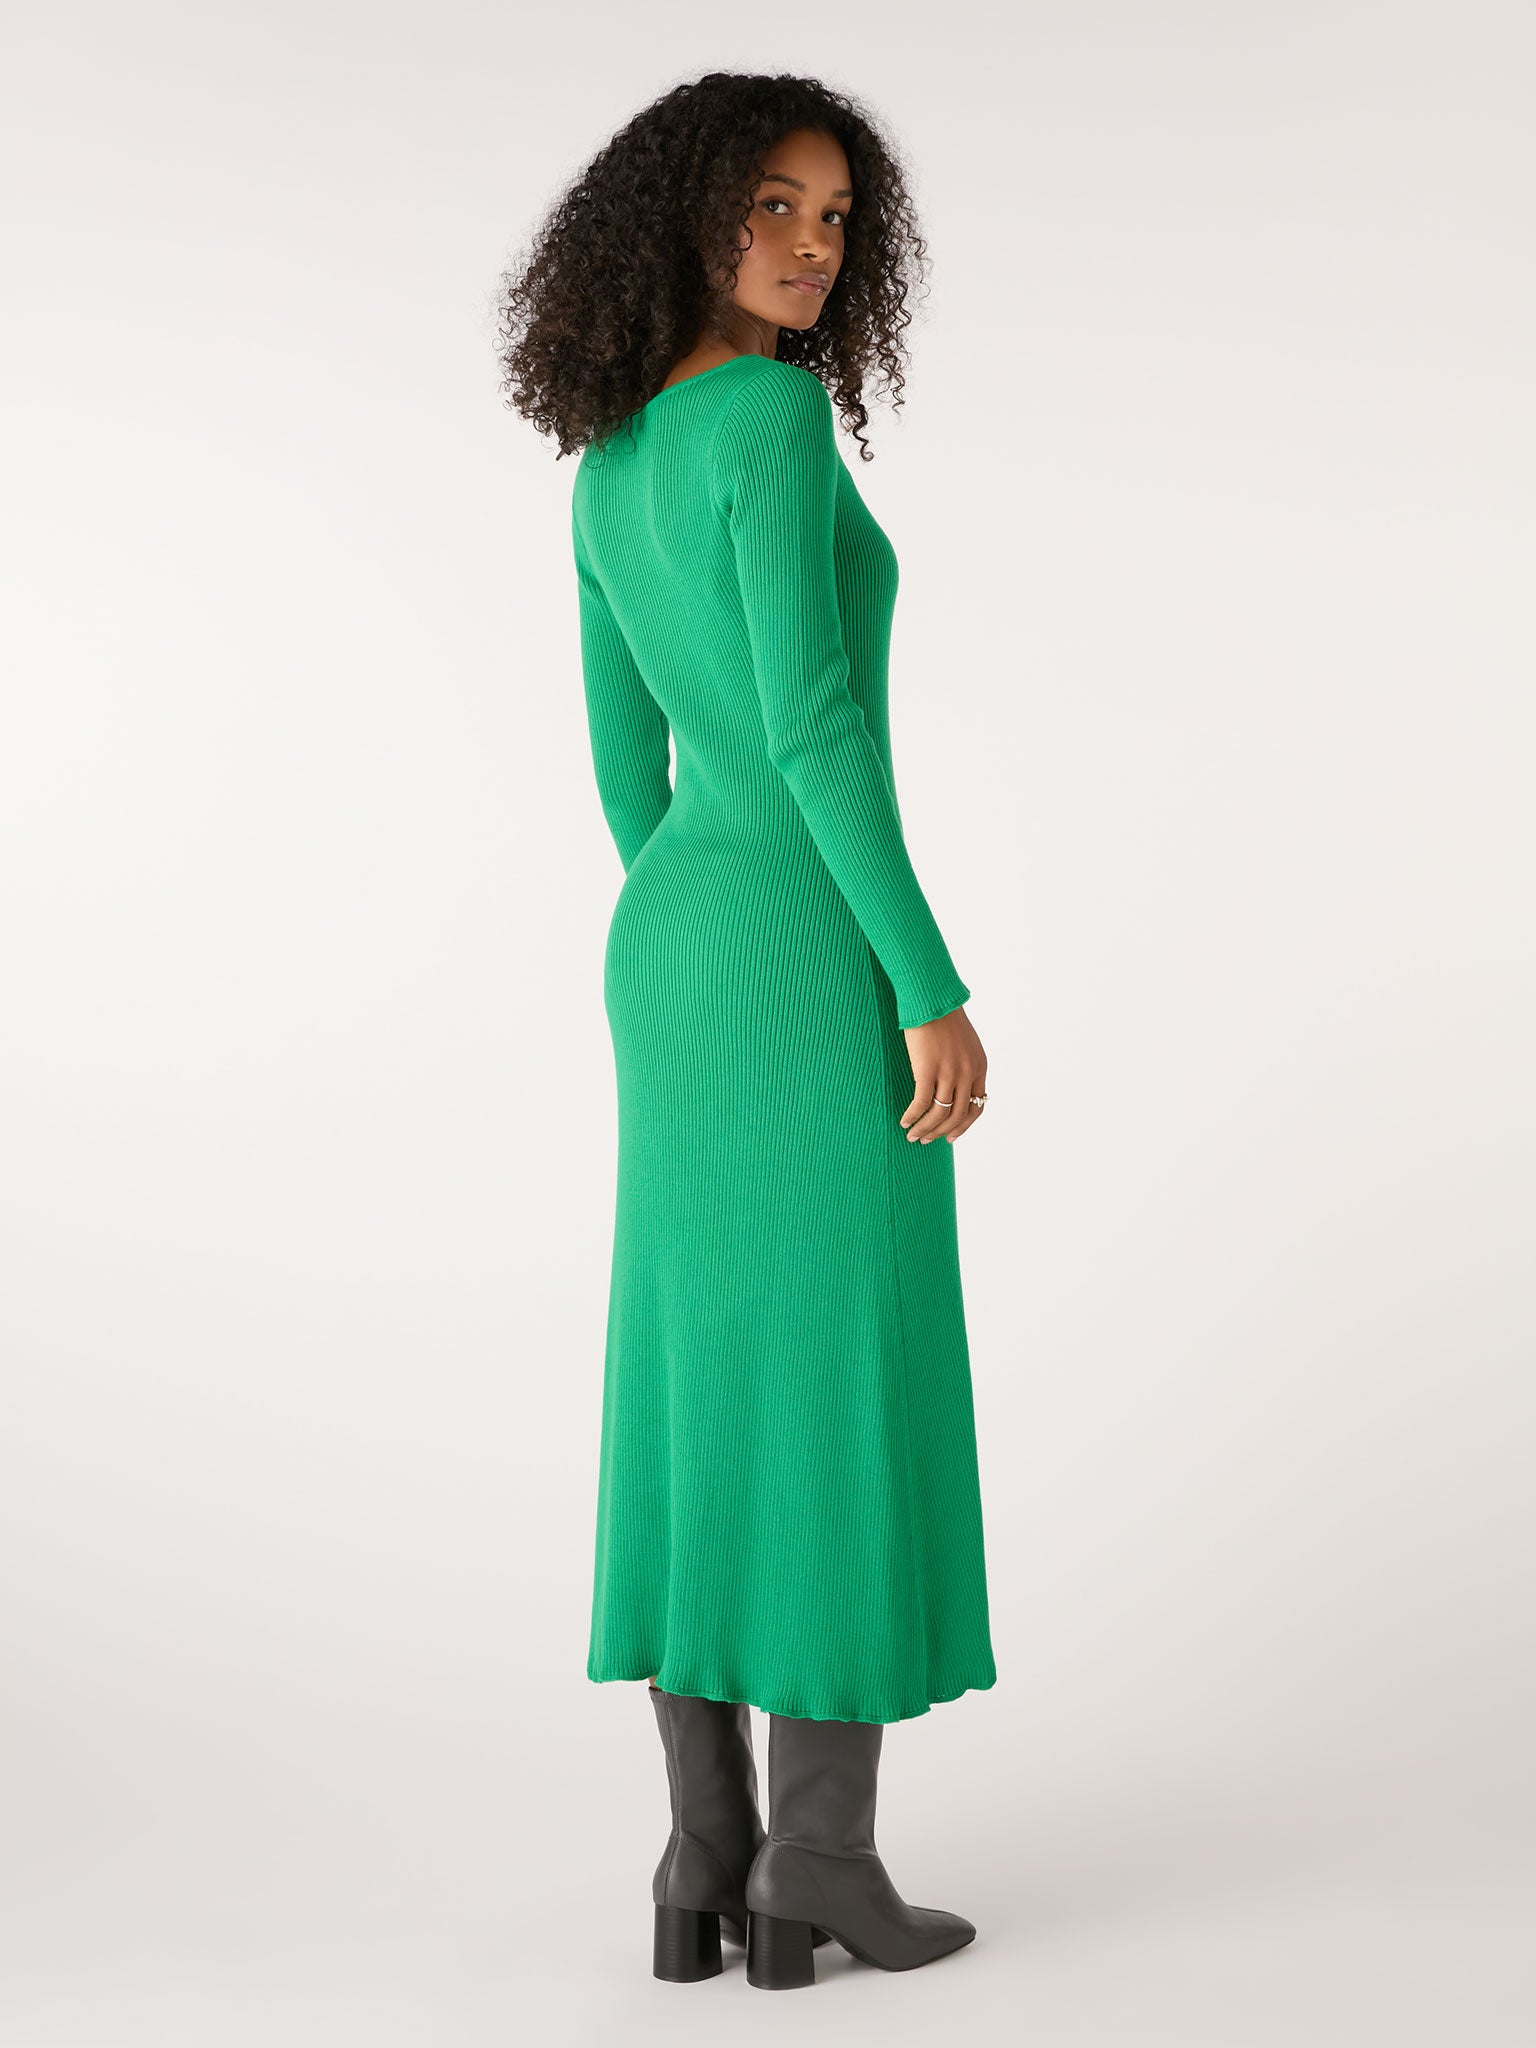 Hampton Knit Dress in Green | Dresses | Knitwear | Sustainable ...